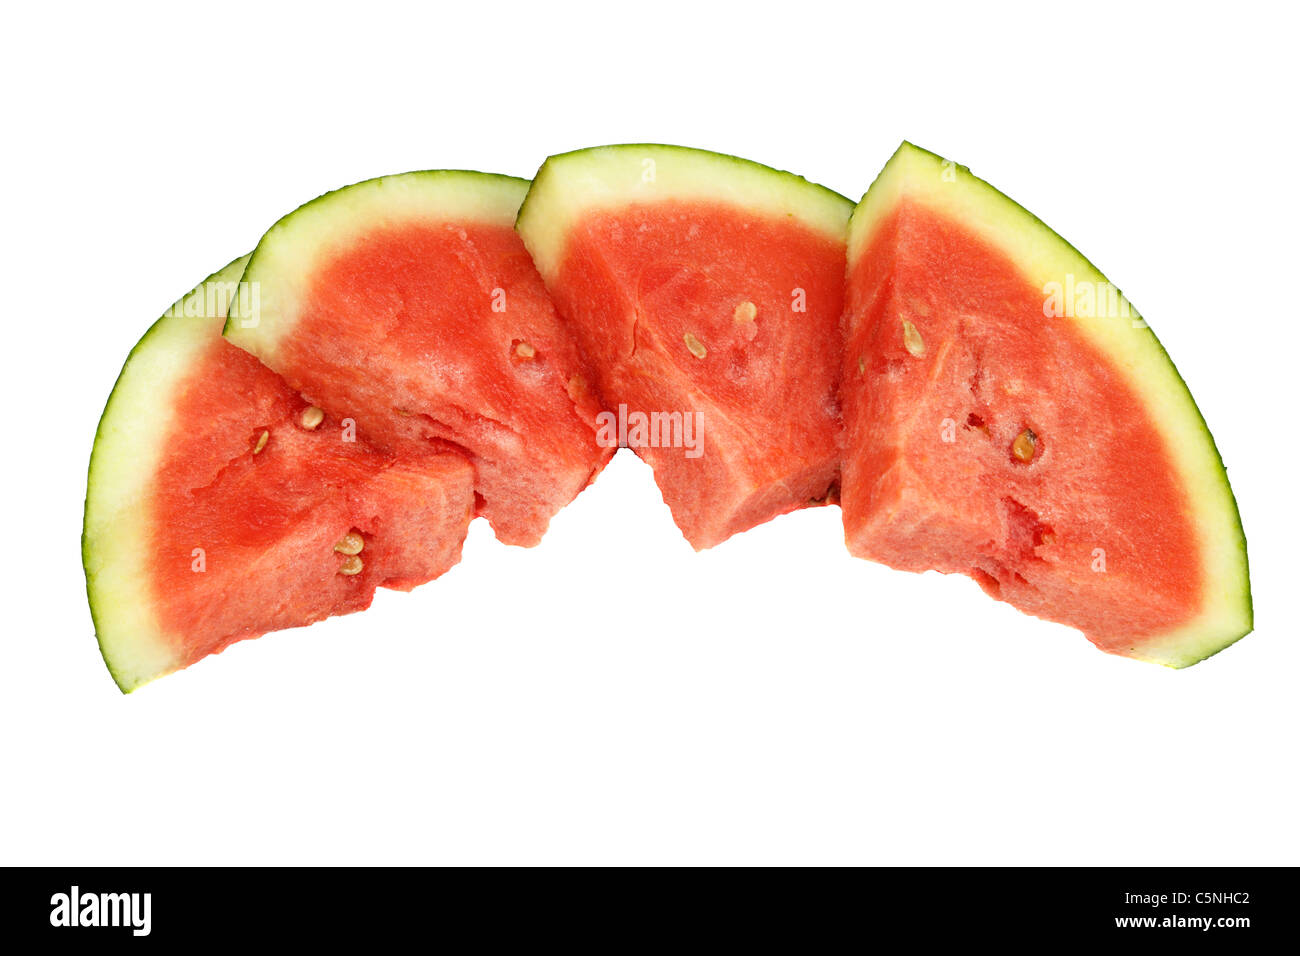 Vier Wasser Melone Stücke nebeneinander auf weißem Hintergrund. Vier süße rote Wassermelone Stücke schneiden in Quartal eine Runde Formen auf einem weißen Hintergrund. Stockfoto